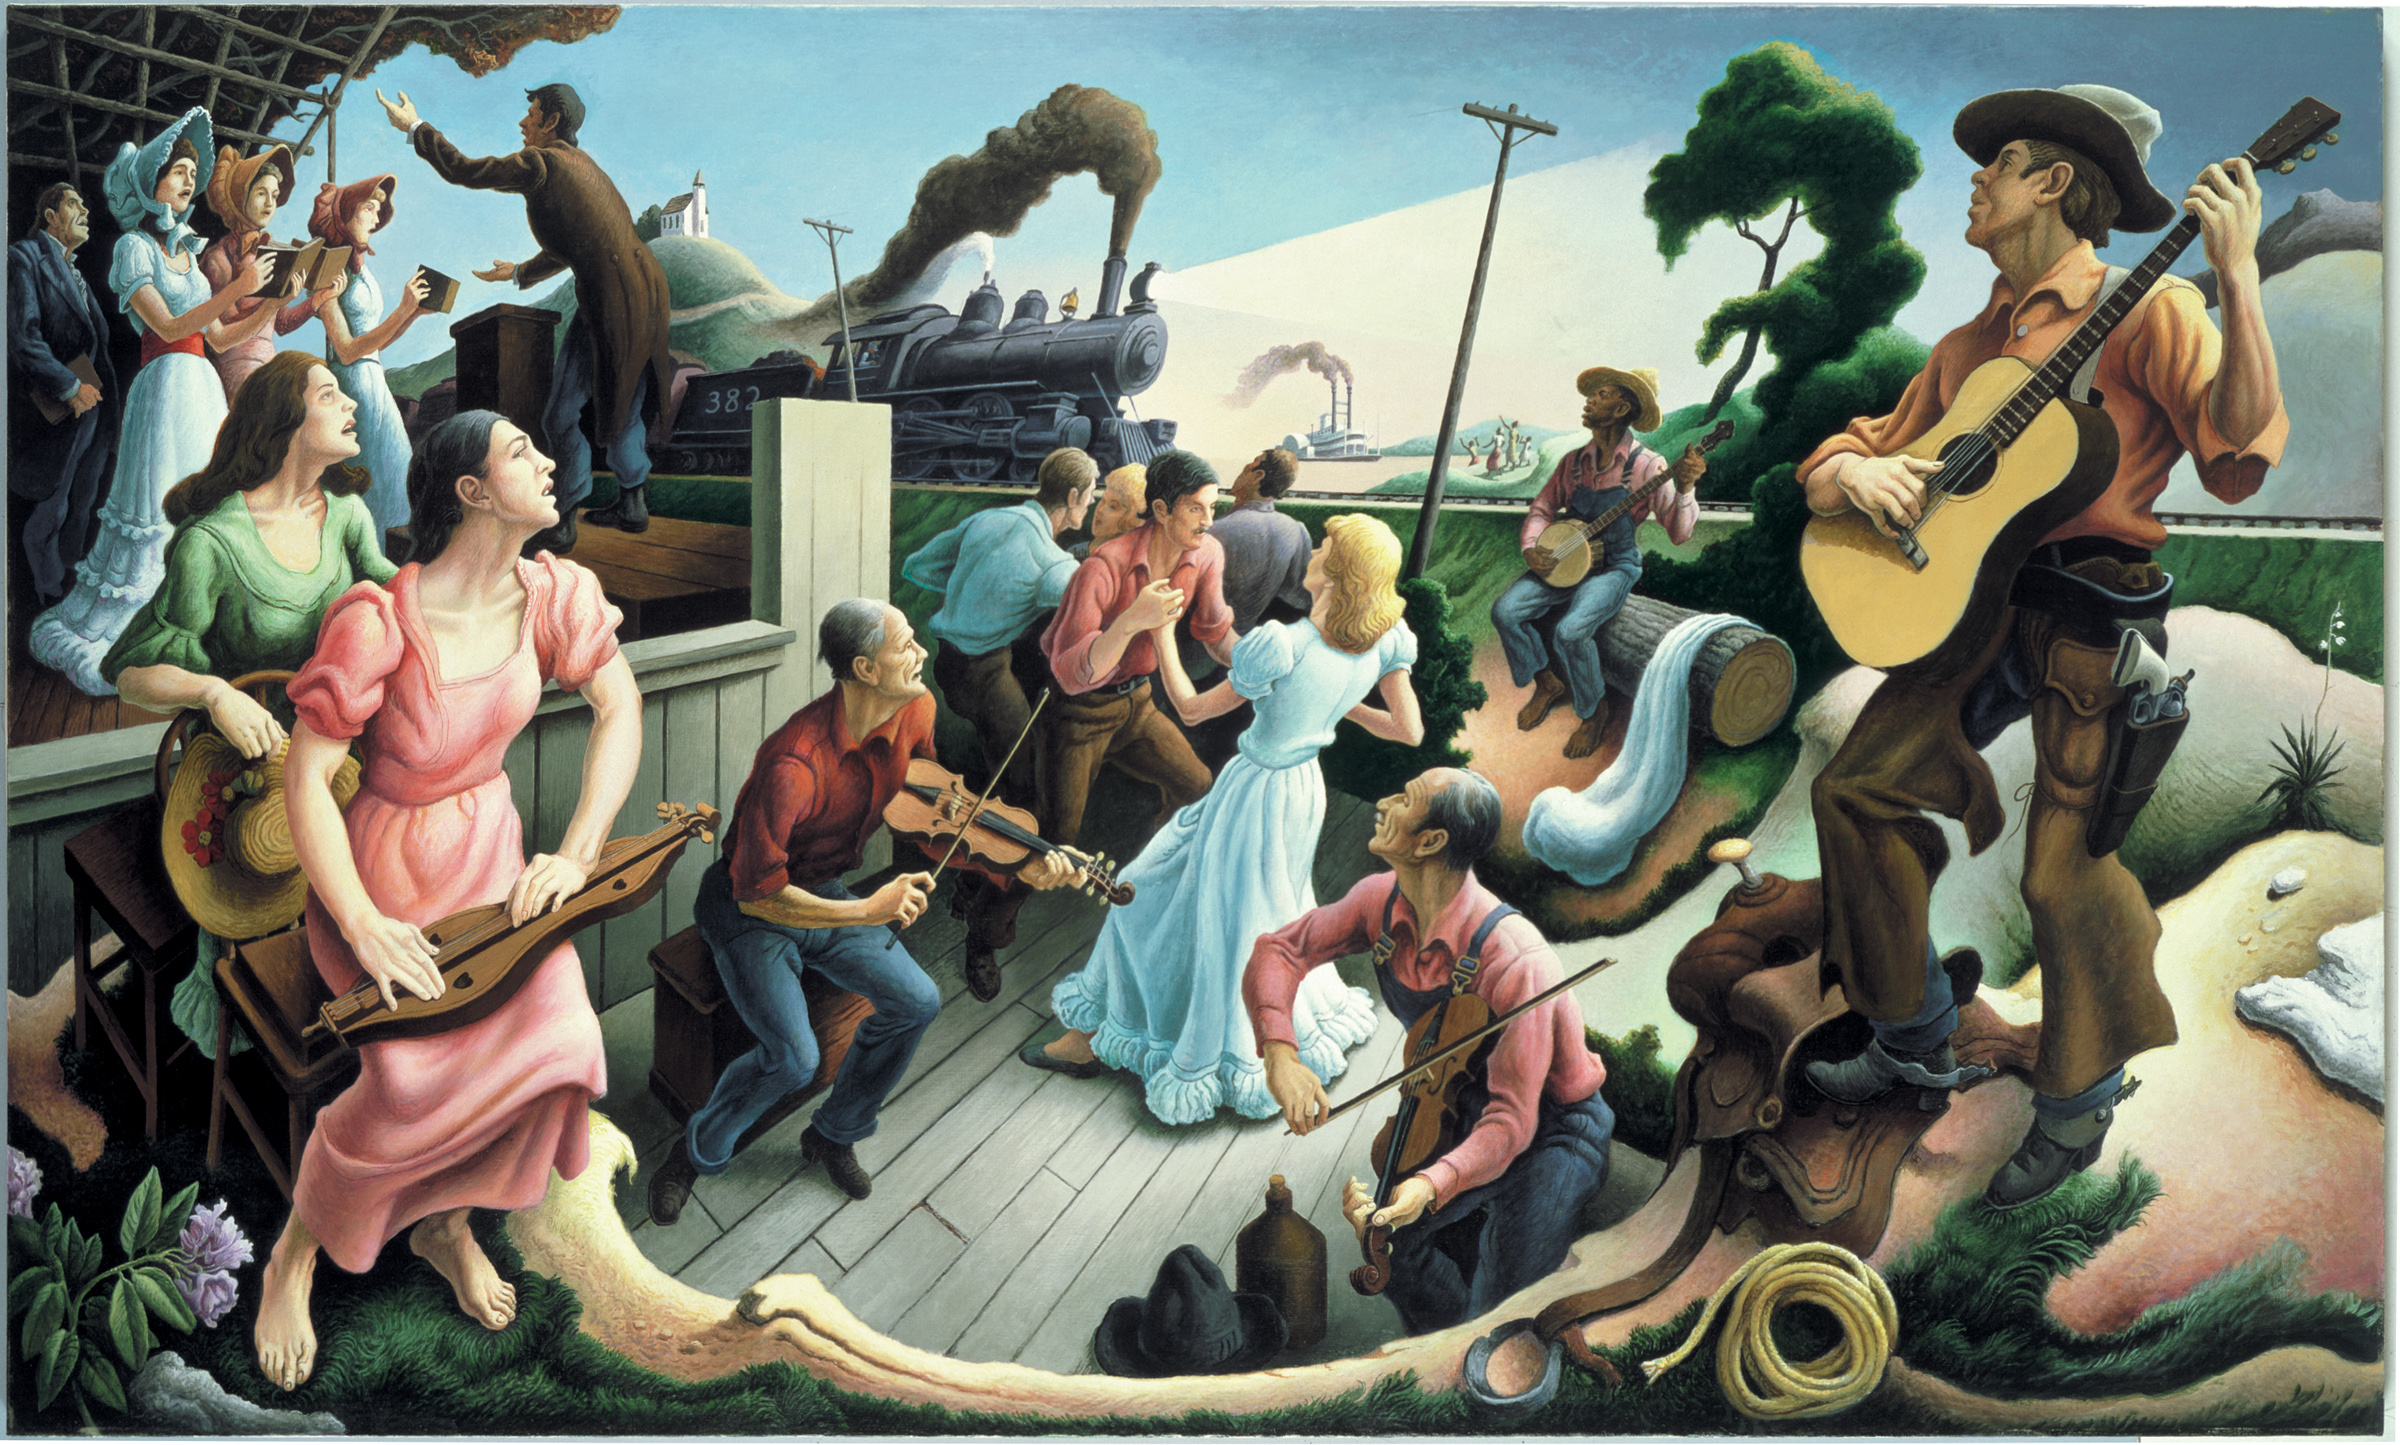 Los orígenes de la música country by Thomas Hart  Benton - 1975 - 82.9 x 304.8 cm Museo y Salón de la Fama del Country